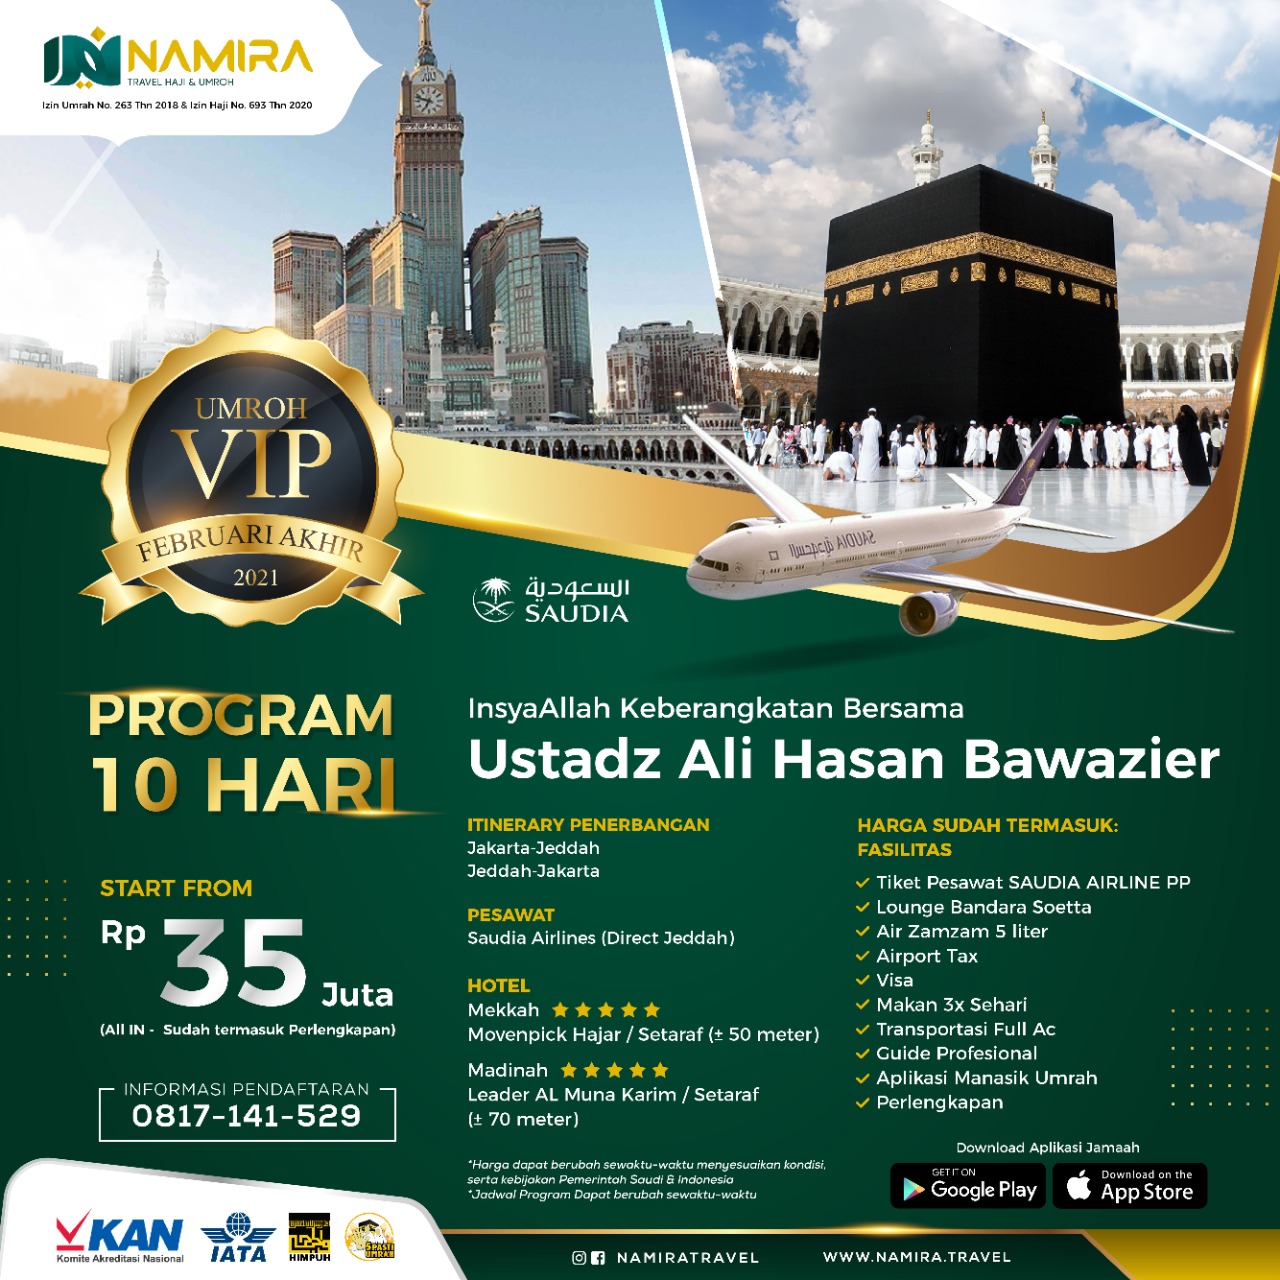 Umrah "VIP" Februari Akhir 2021 InsyaAllah Bersama Ustadz Ali Hasan Bawazier